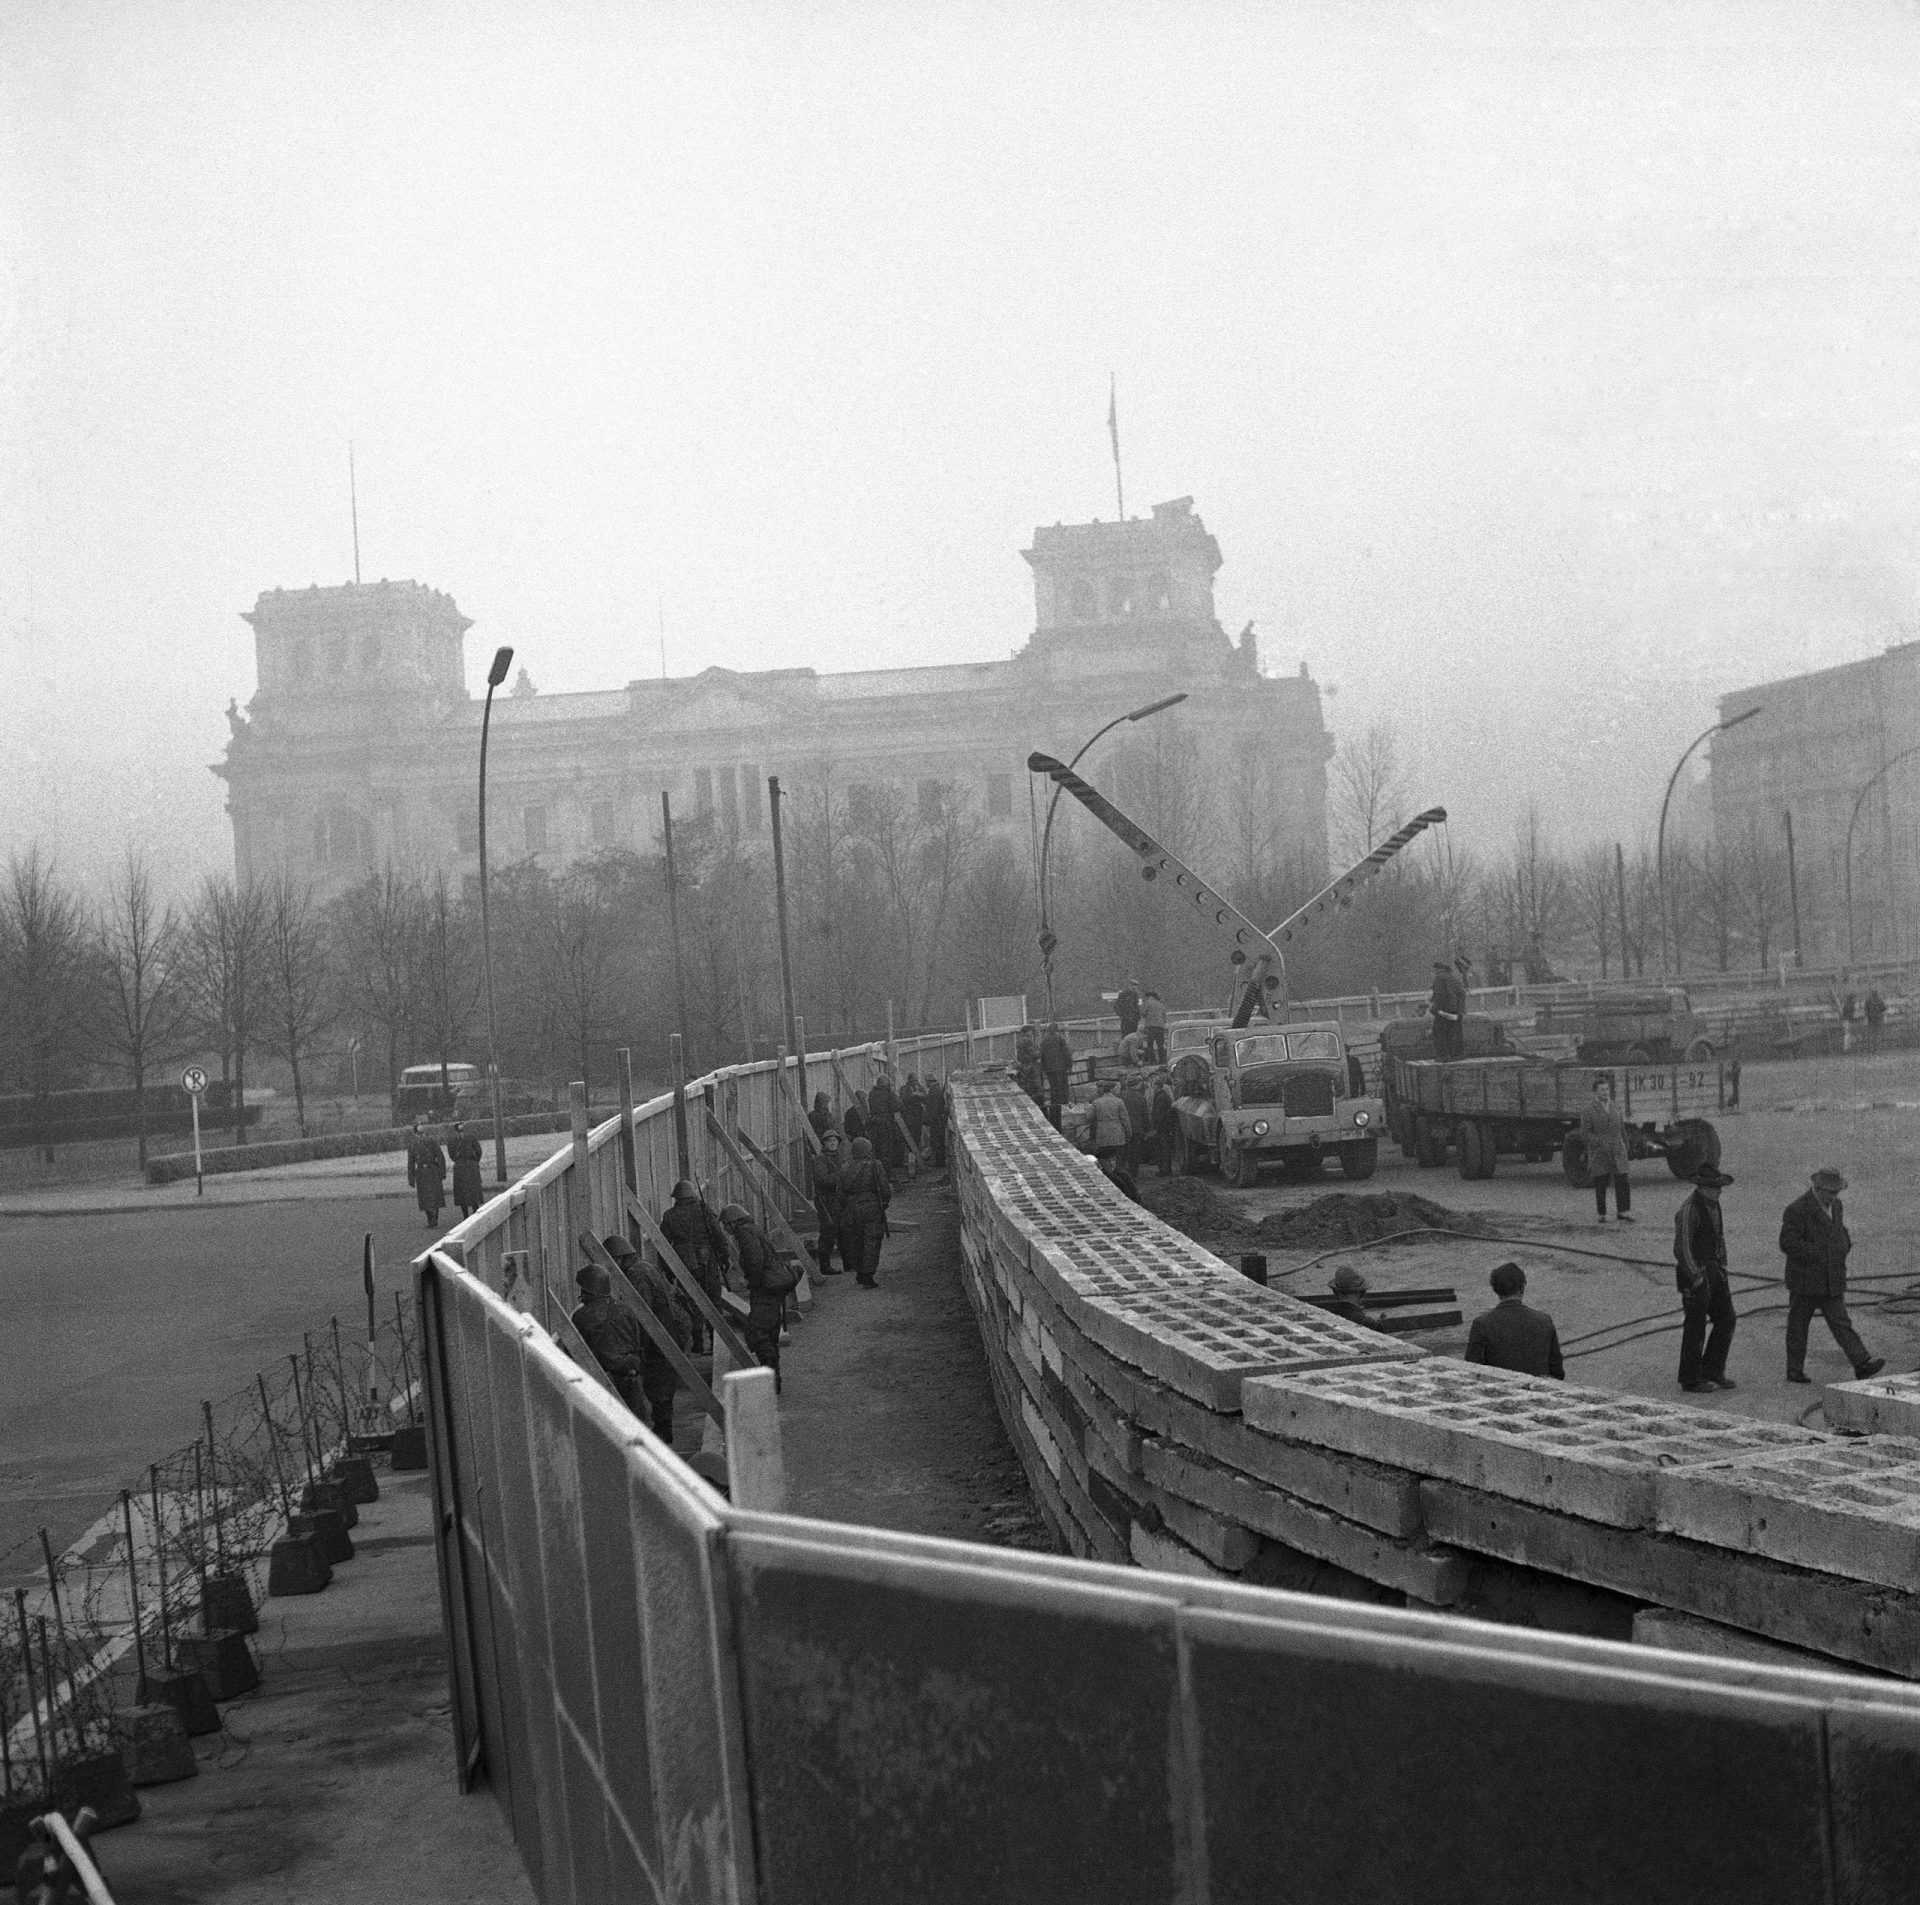 Imagens da construção do Muro de Berlim que se iniciou em Agosto de 1961